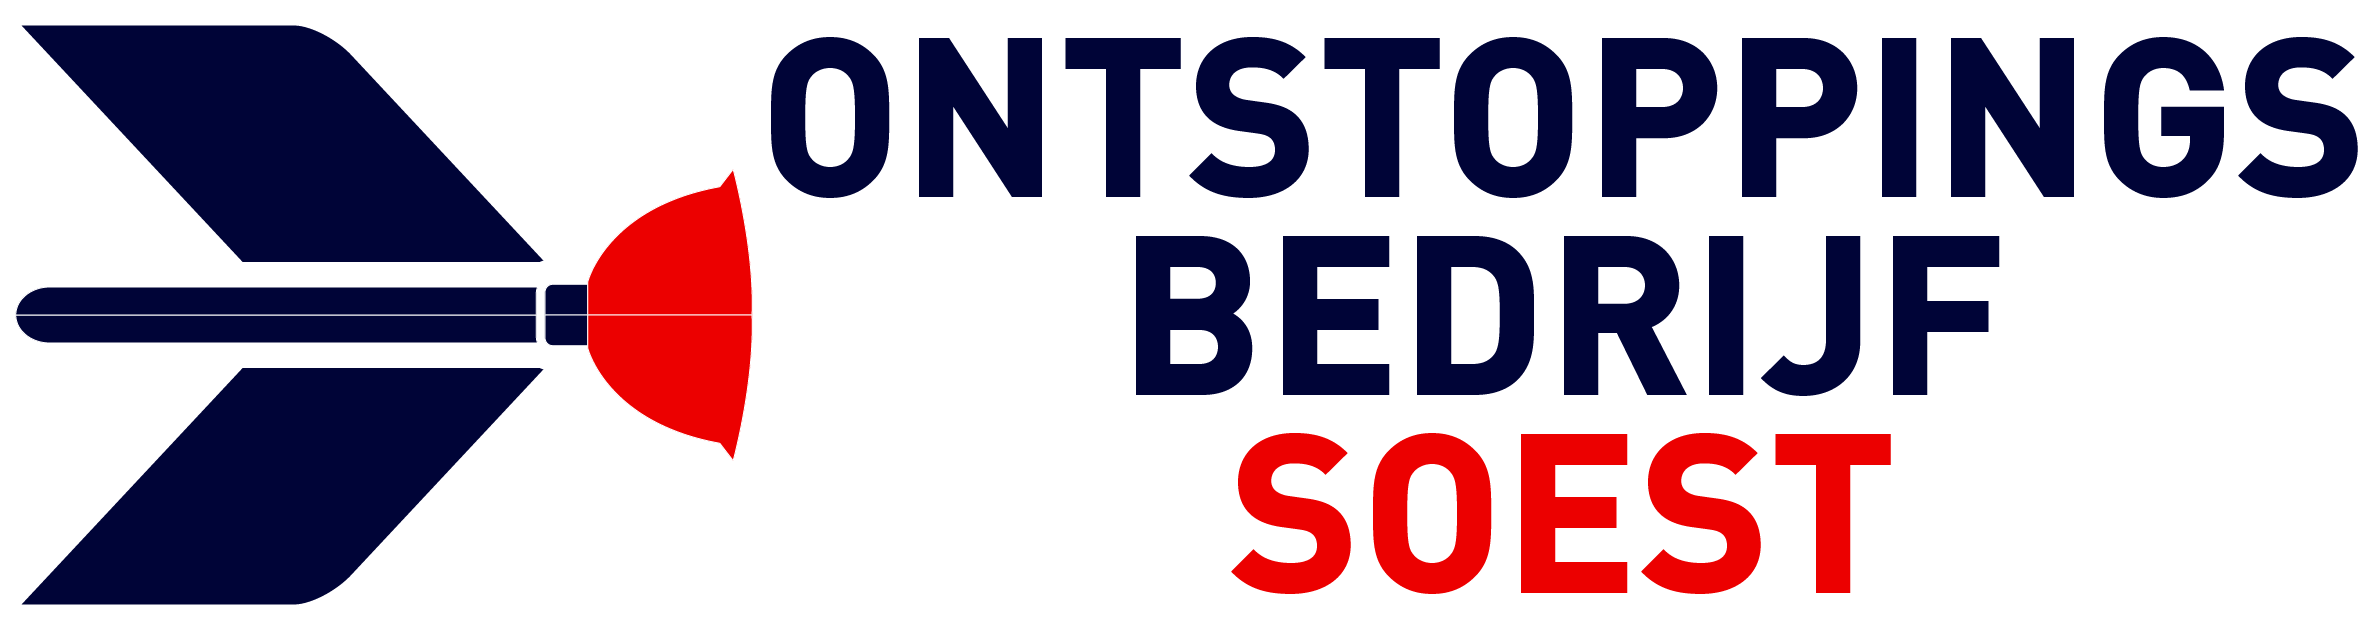 Ontstoppingsbedrijf Soest logo